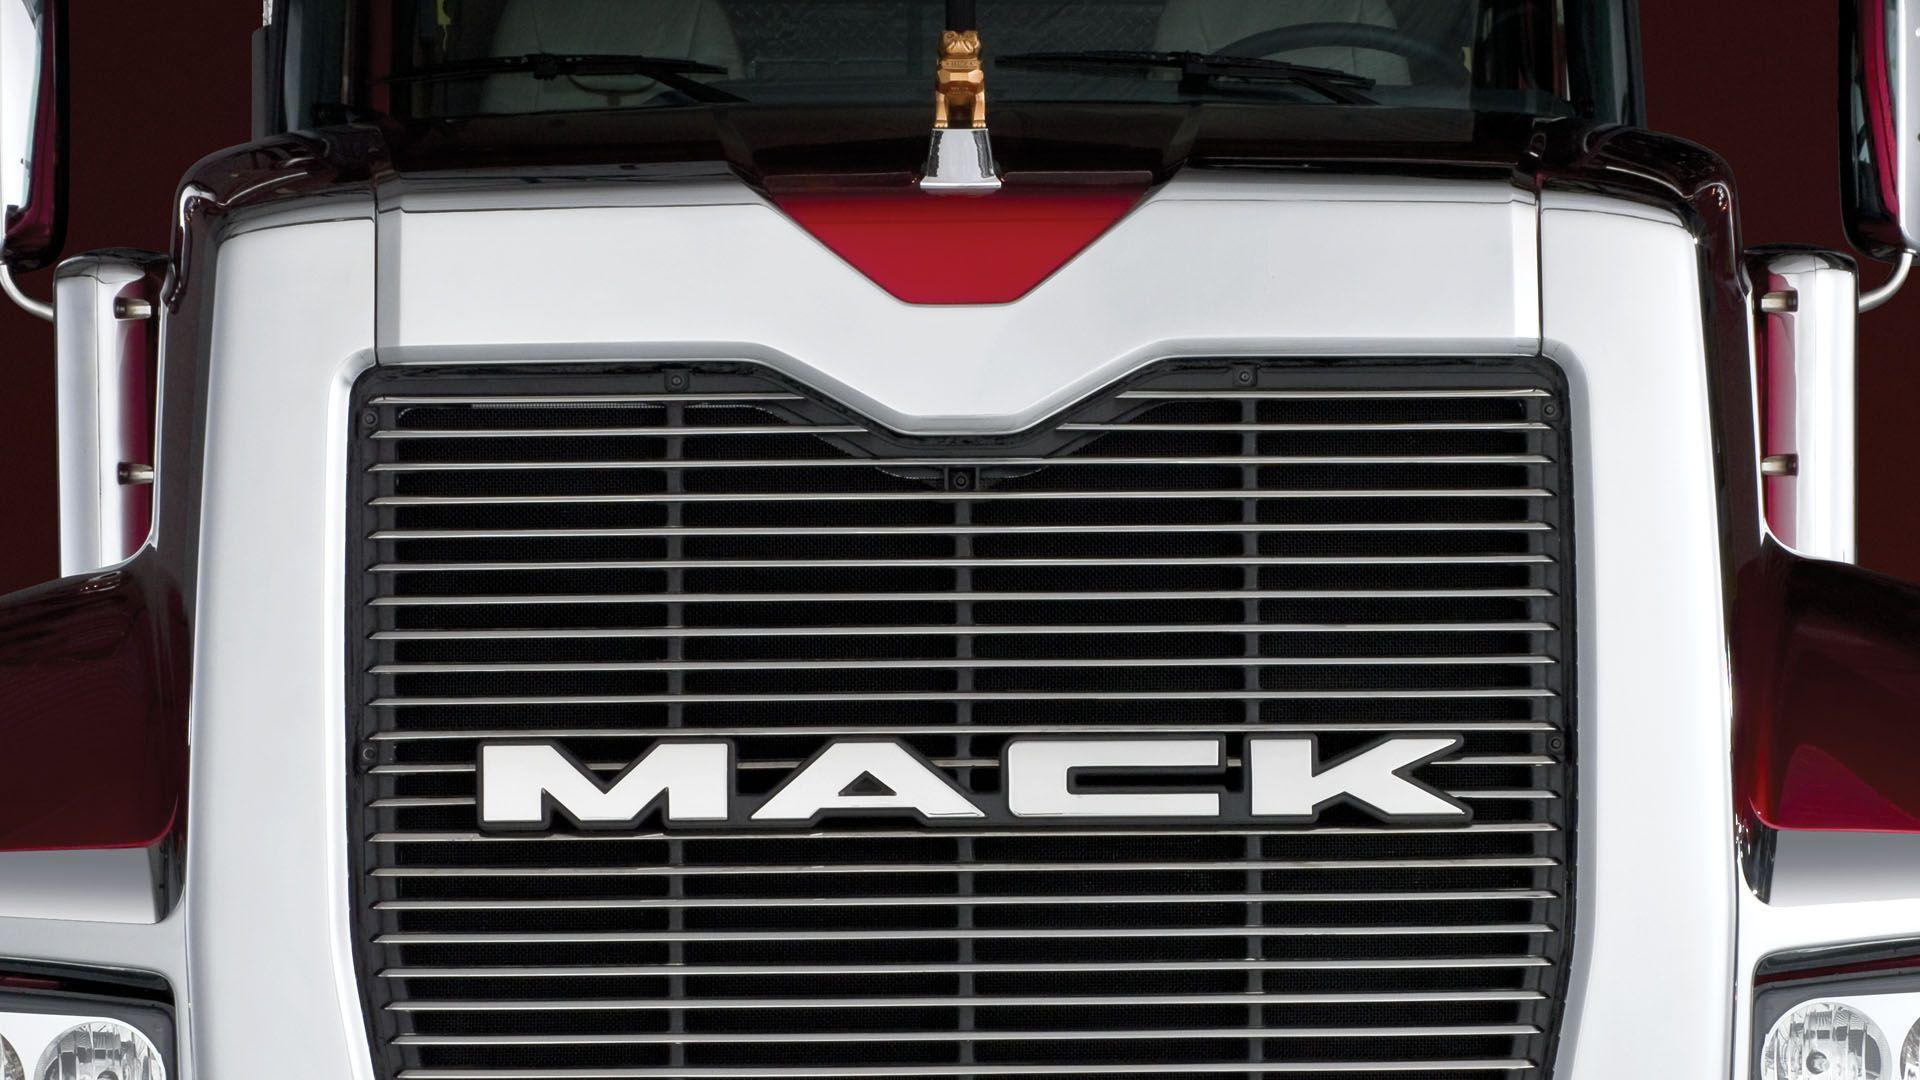 Mack Titan Series 01 wallpaper. Buses